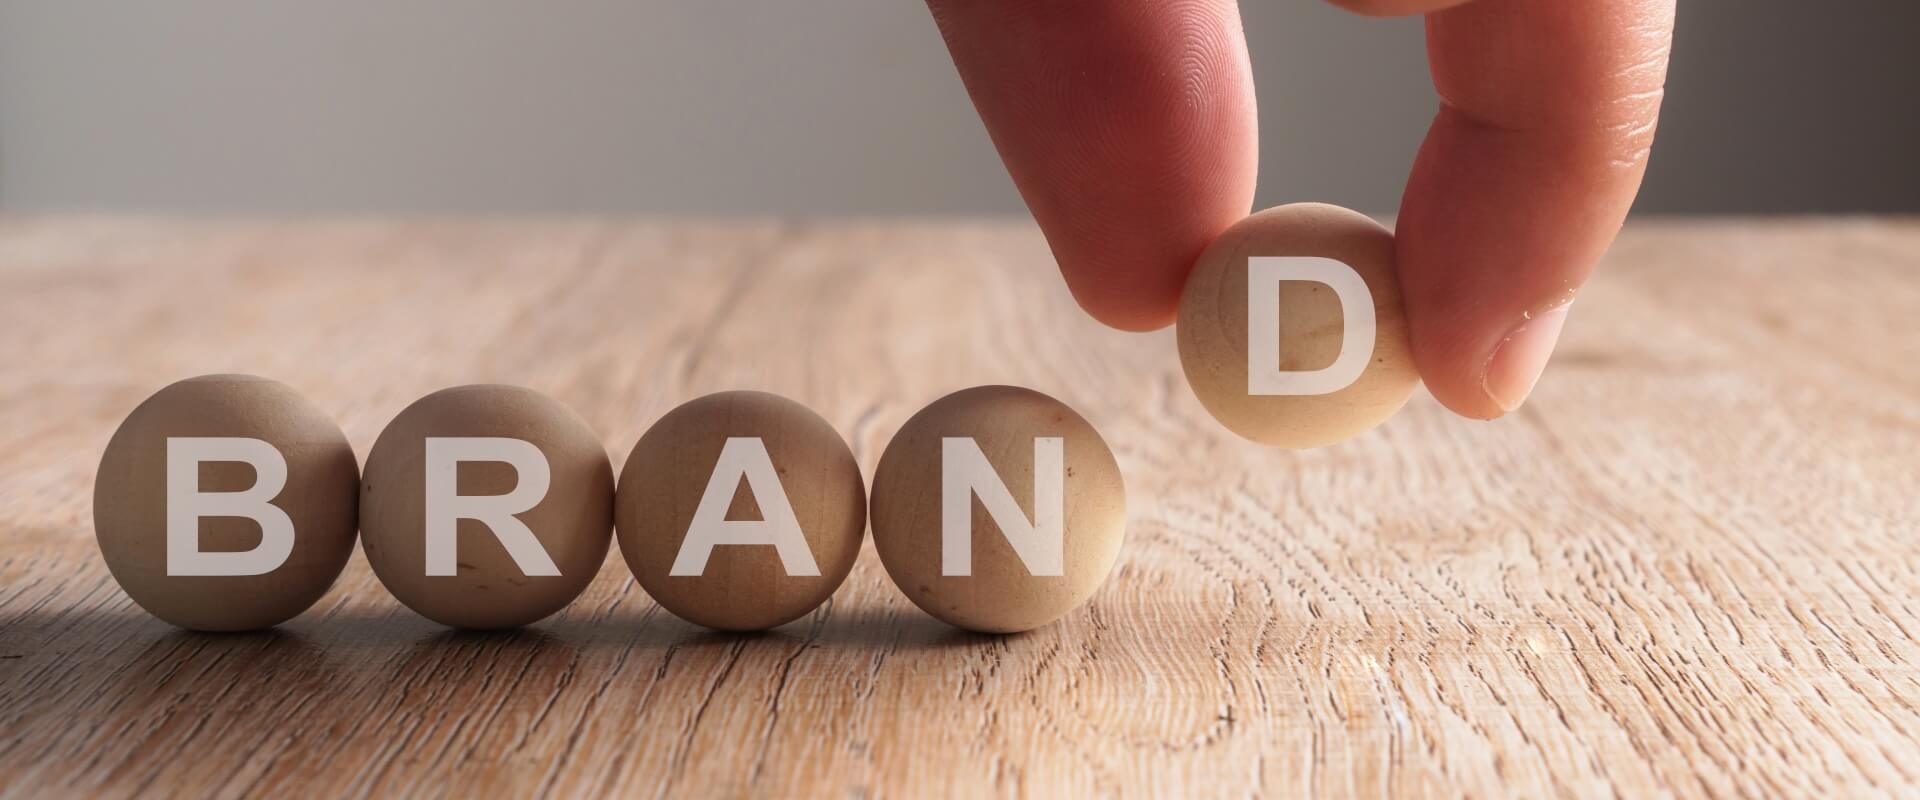 hand-putting-brand-word-written-wooden-ball2 (1)